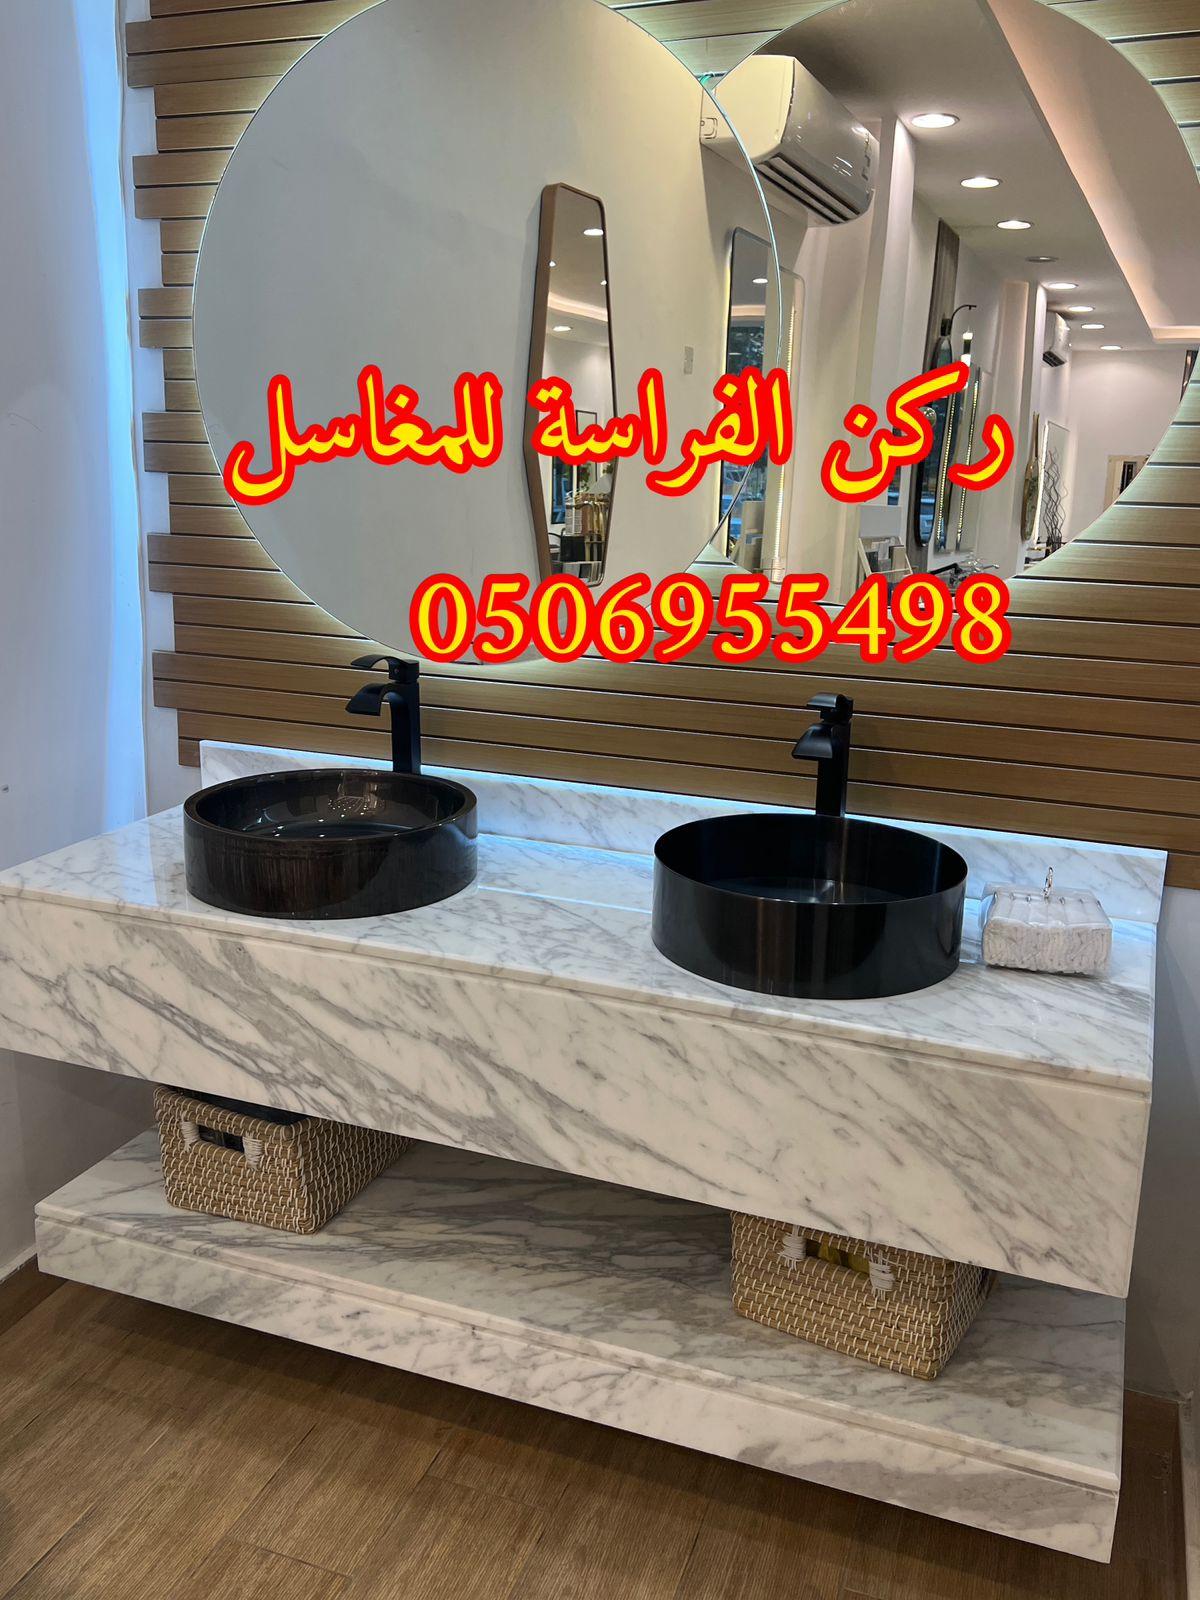 مغاسل رخام تفصيل في الرياض,0506955498 467318236